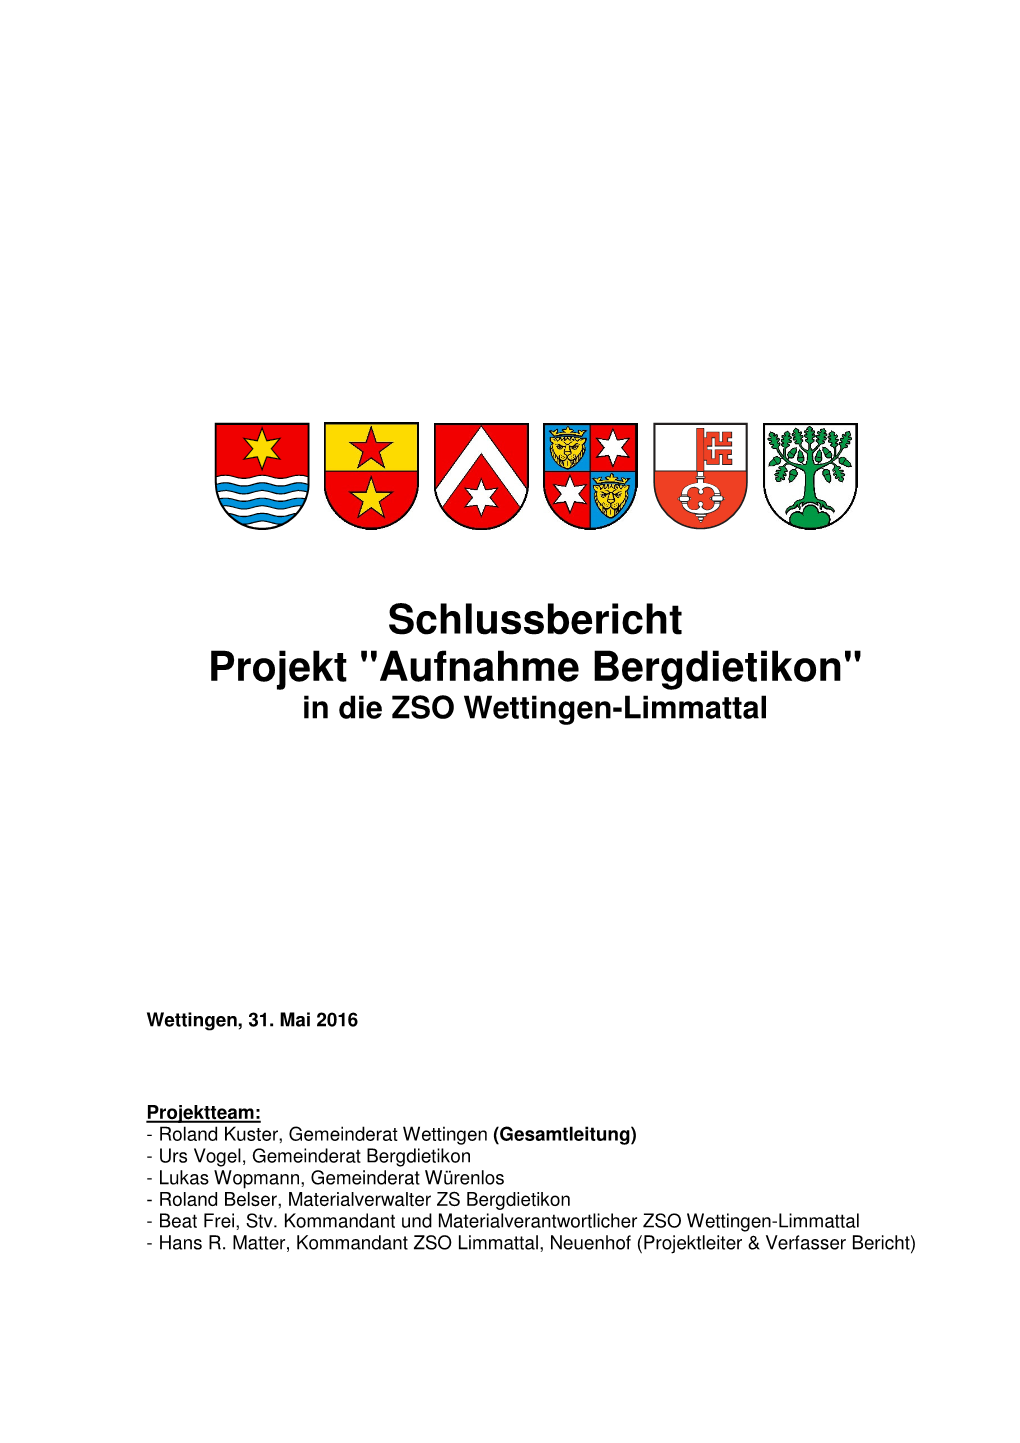 Schlussbericht Projekt "Aufnahme Bergdietikon" in Die ZSO Wettingen-Limmattal